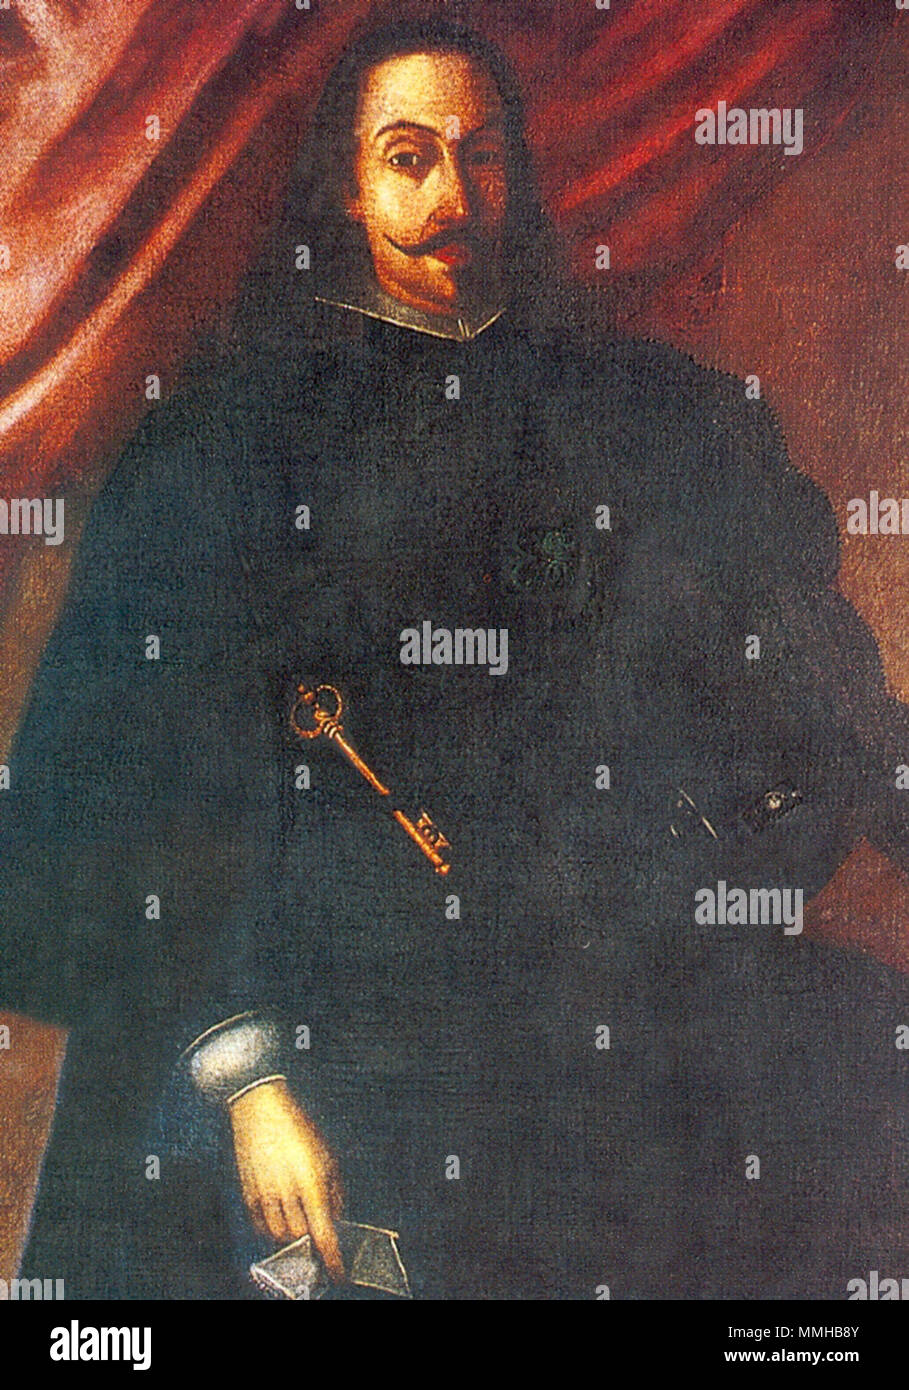 Español: Luis Enríquez de Guzmán, IX Conde de Alba de Liste, Virrey de la Nueva España y del Perú. Englisch: Luis Enríquez de Guzmán, 9 Graf von Alba de Liste, Vizekönig von Neuen Spanien (1650-1653) und Vizekönig von Peru (1655-1661). 17. Jahrhundert. Alba de Liste Stockfoto